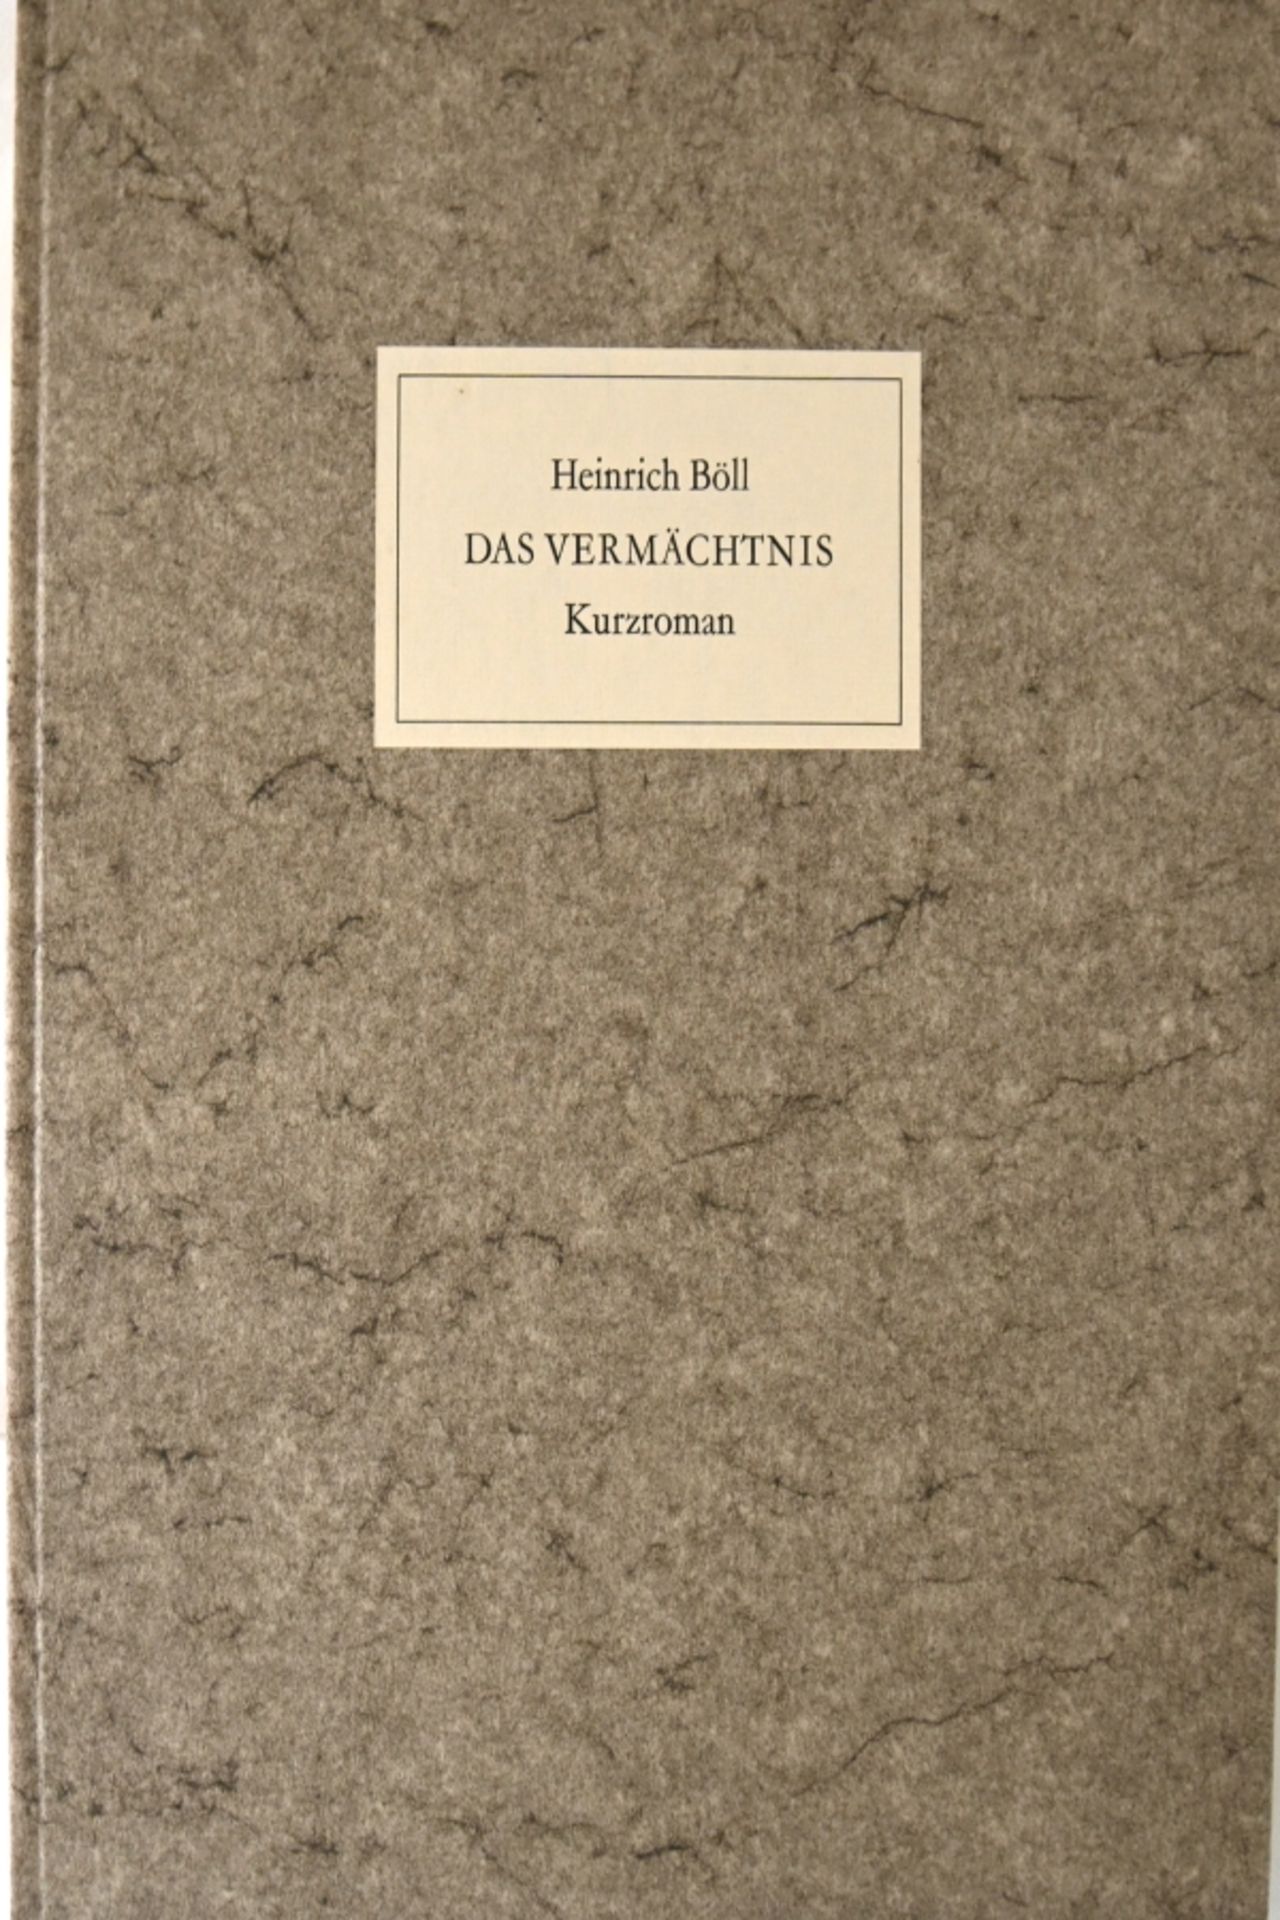 BÖLL Heinrich "Das Vermächtnis", Kurzroman mit einer Portrait-Lithographie von PIATTI Celestino (19